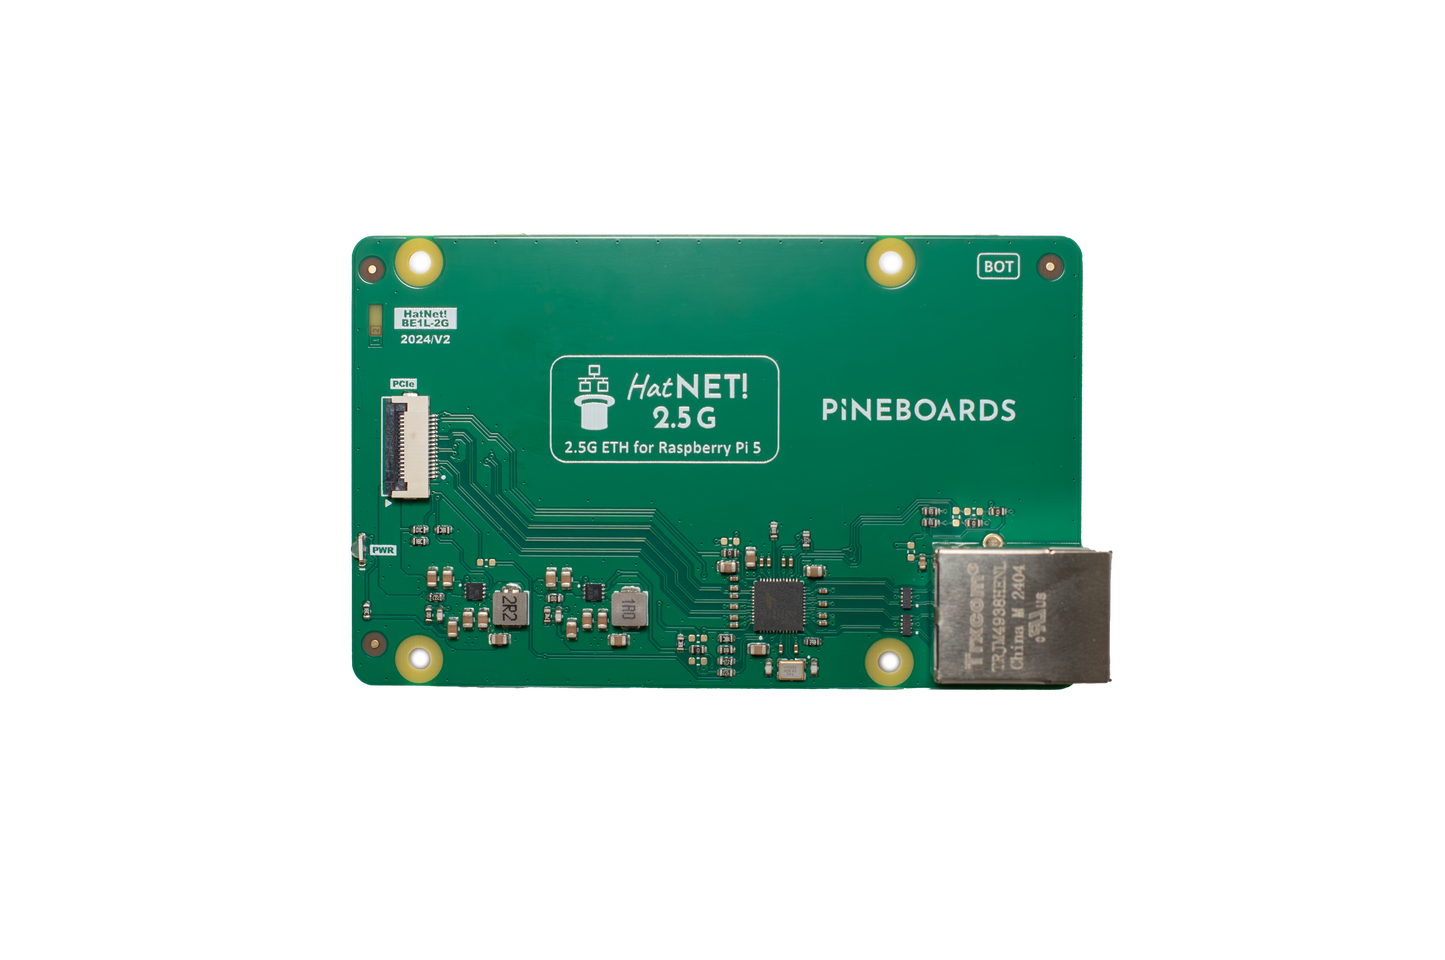 HatNET! 2.5G (2.5 Gigabit Ethernet) for Raspberry Pi 5